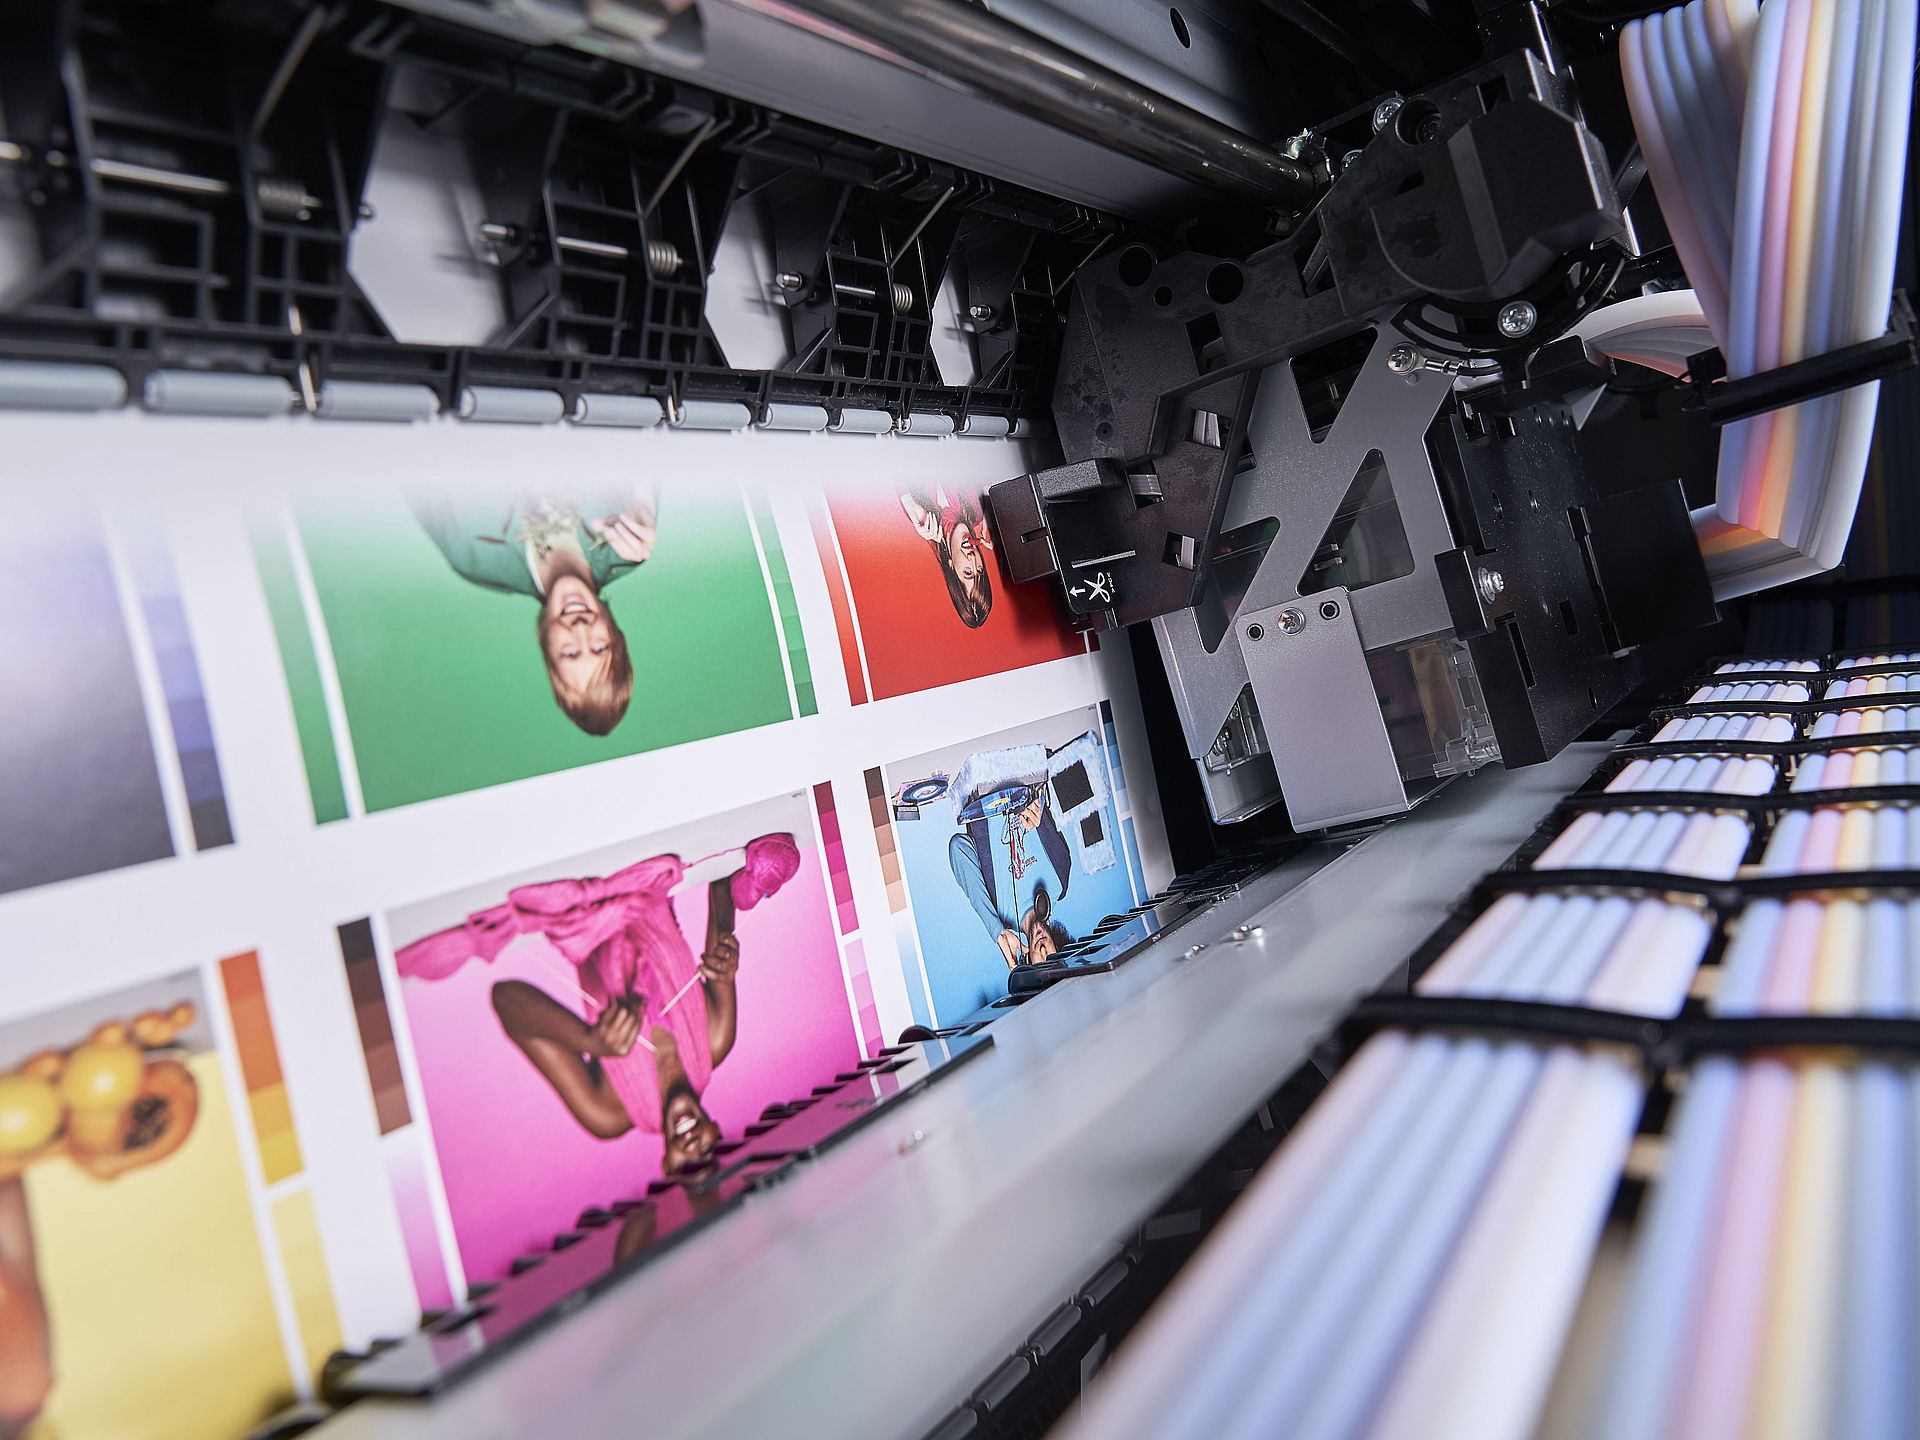 Innere eines Digitaldruckers